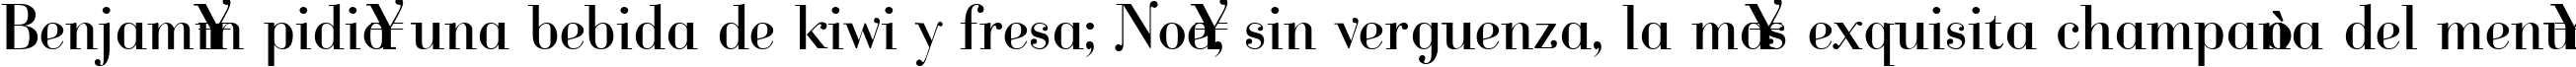 Пример написания шрифтом Cantabile текста на испанском